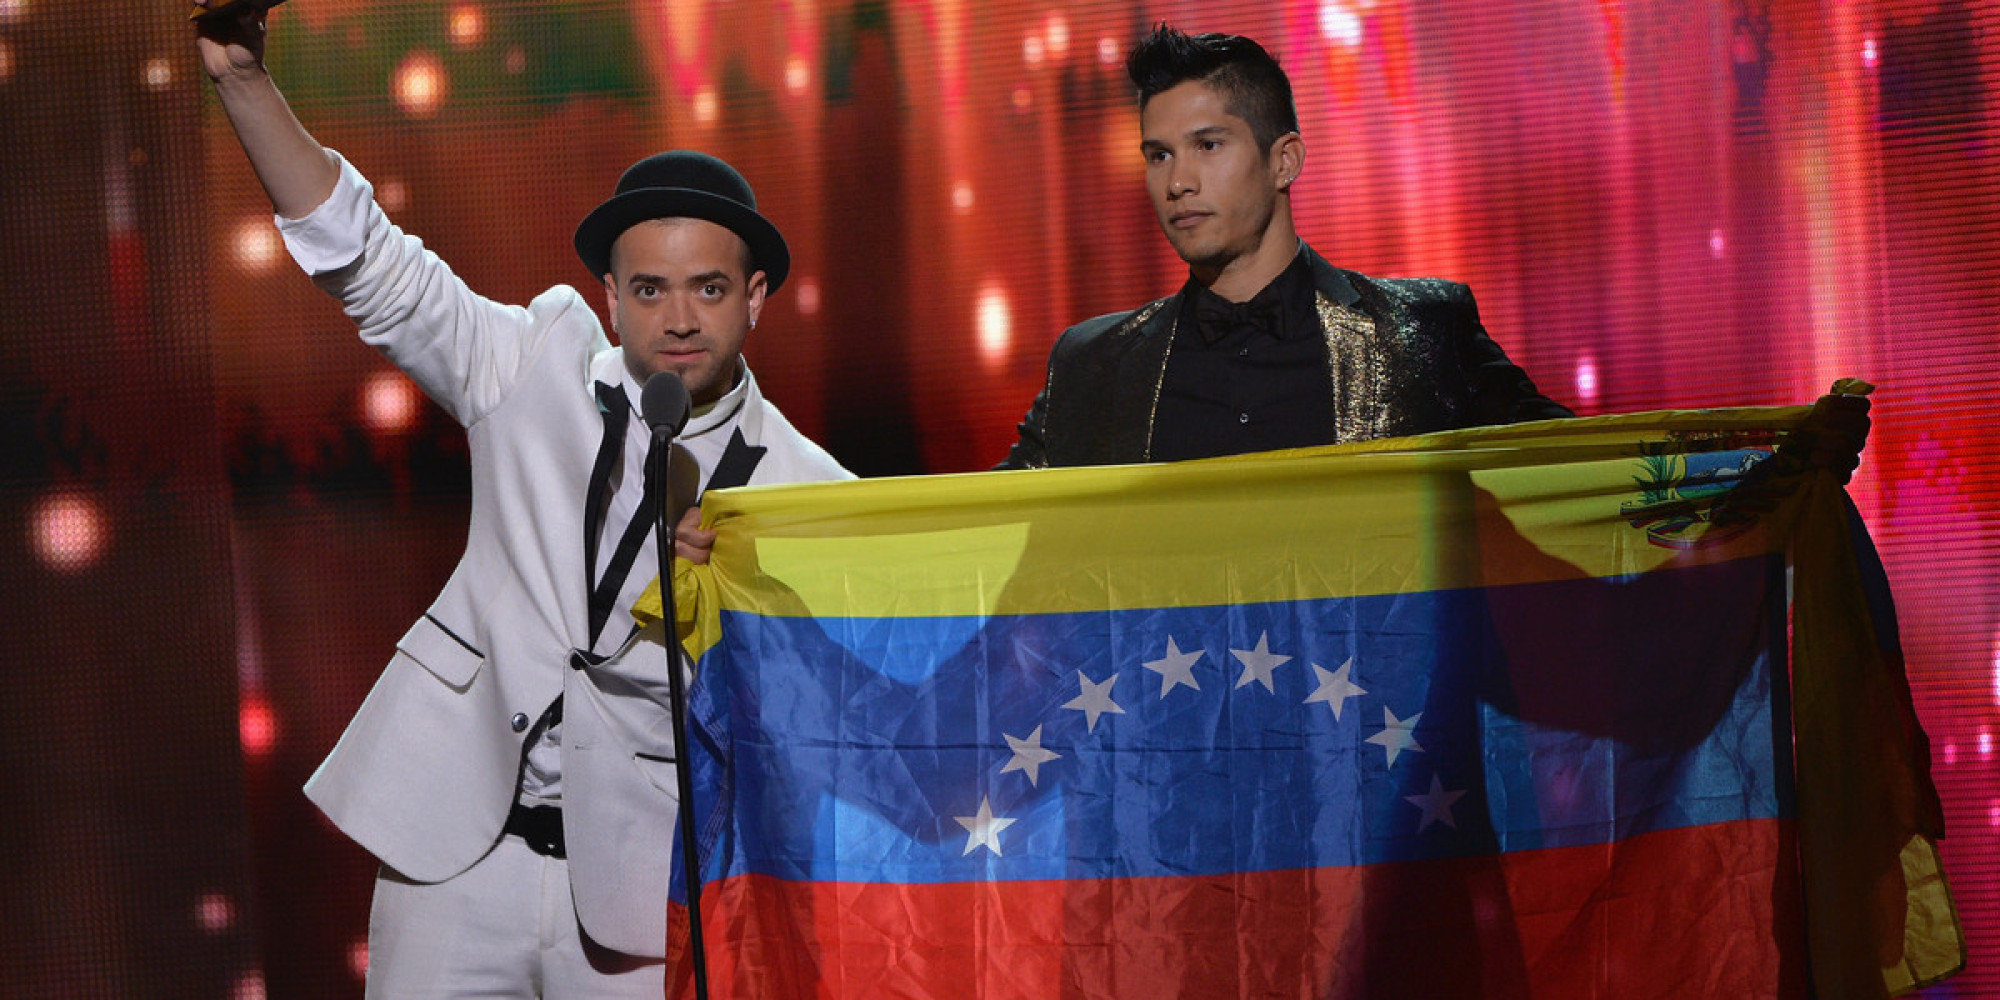 Demasiado “brutales” las consignas anti Maduro en el concierto de “Chino y Nacho” en Caracas